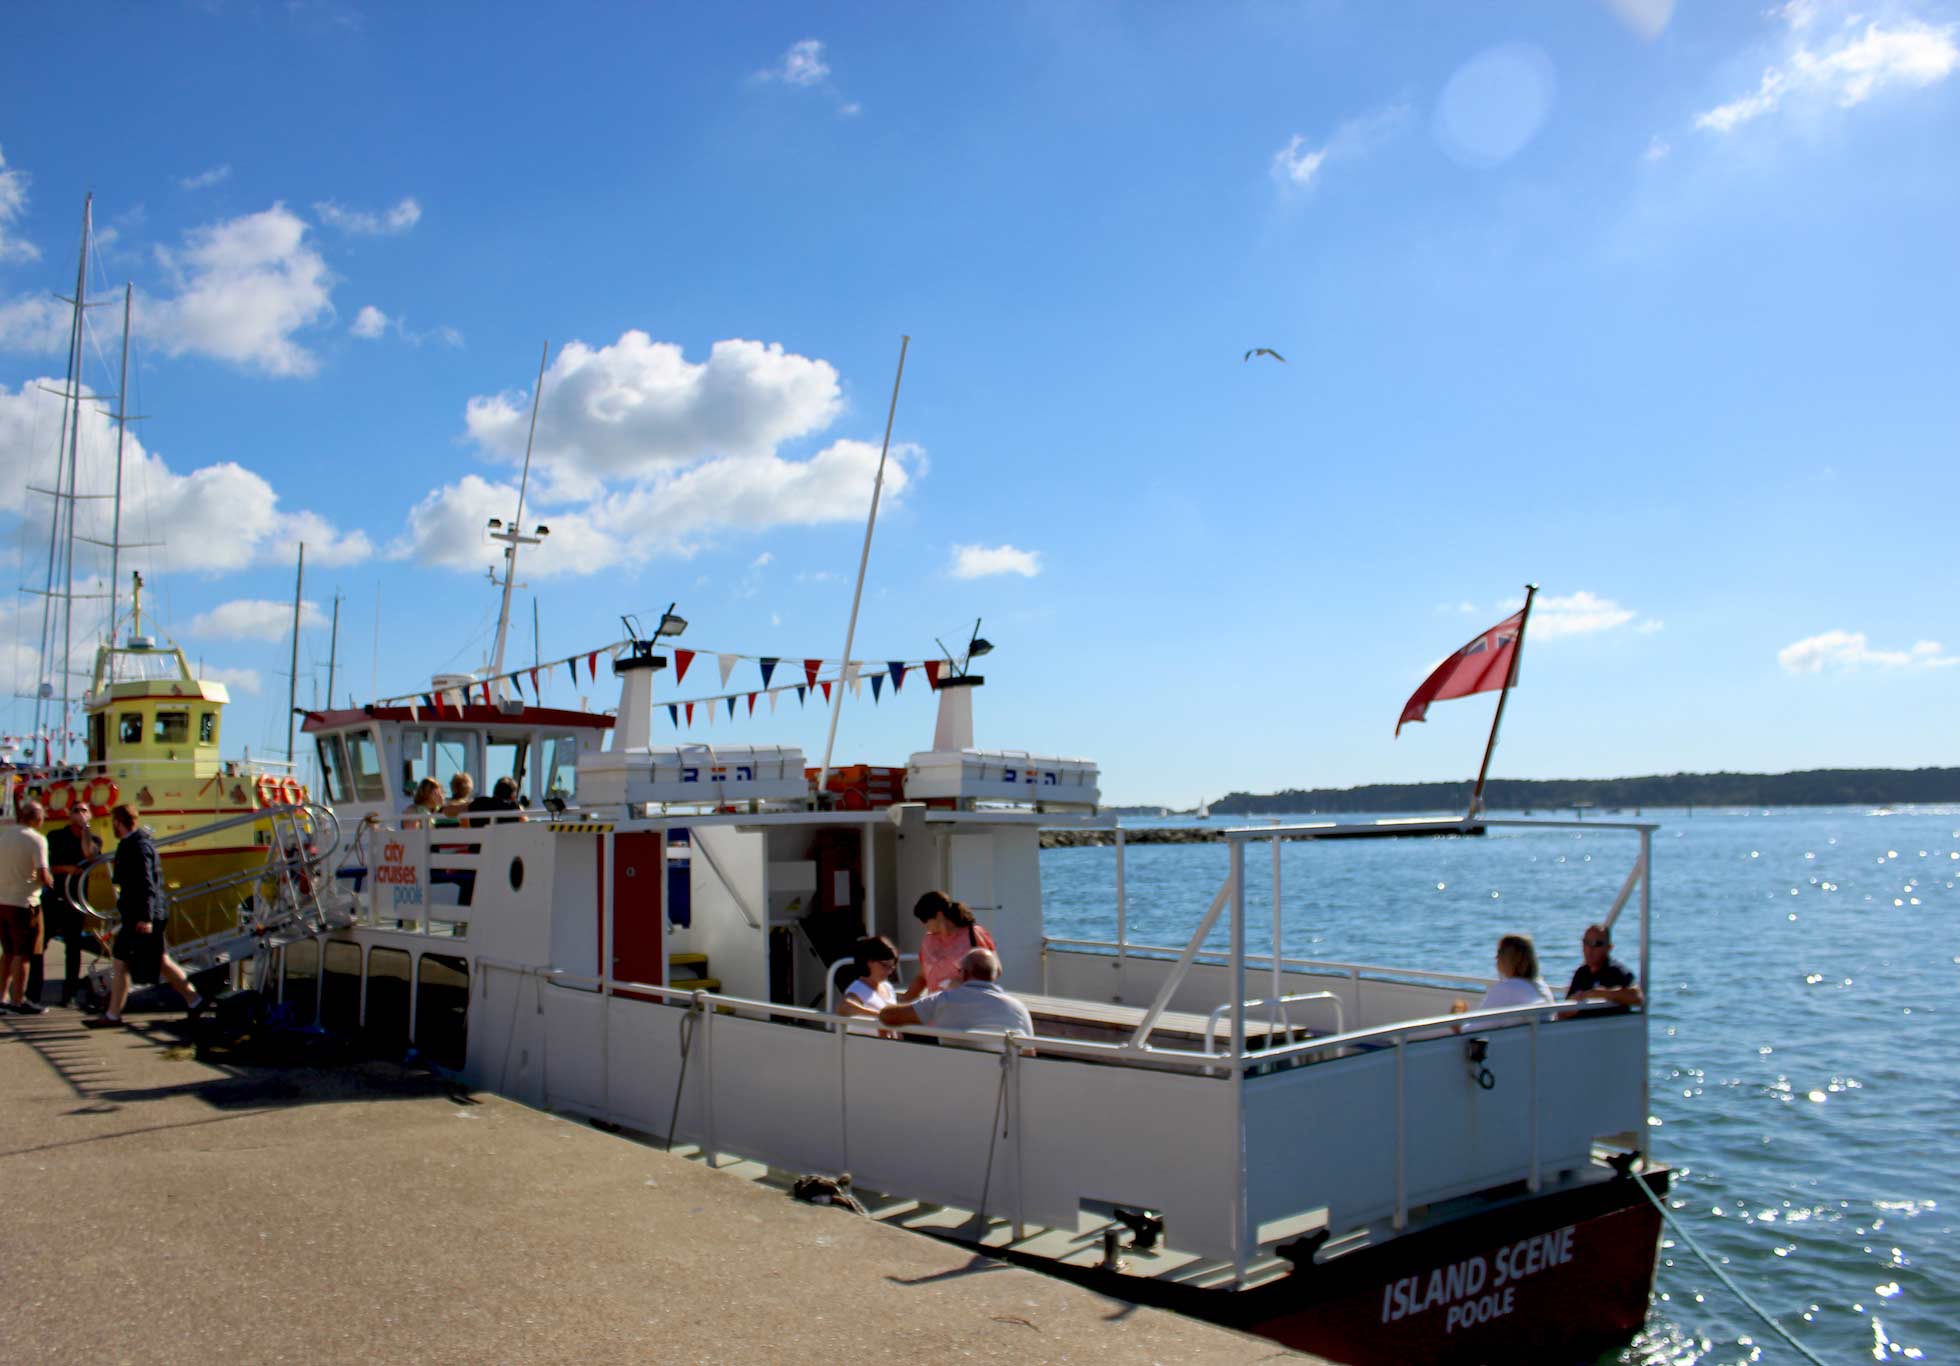 Остров Сцена небольшого судна, пришвартованного в Пуле, с людьми, сидящими на палубе.